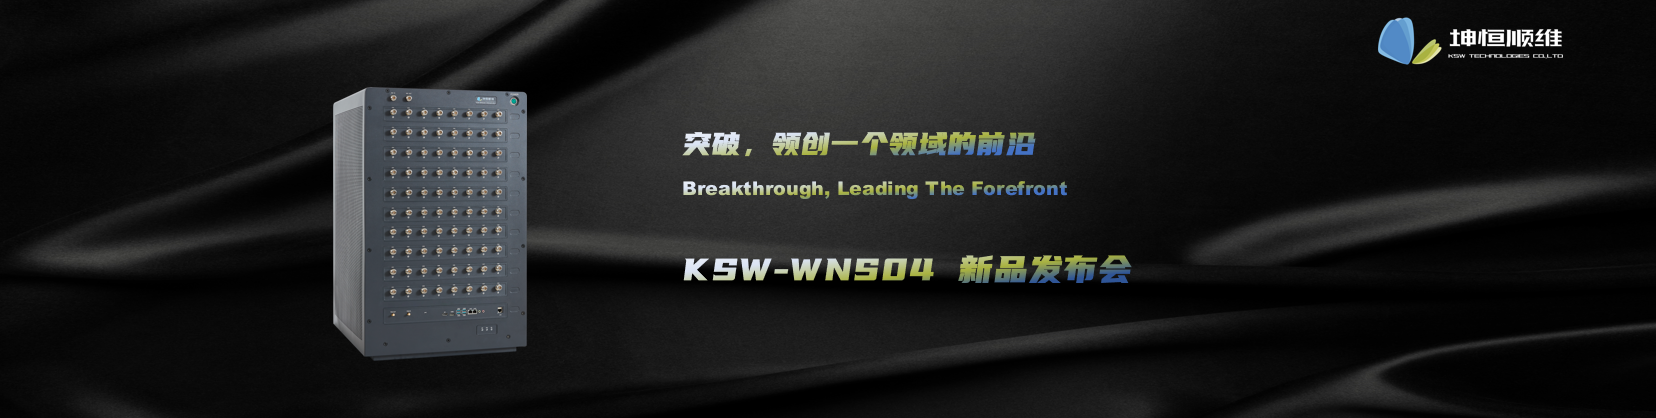 标题：突破，领创一个领域的前沿—KSW-WNS04新品发布会